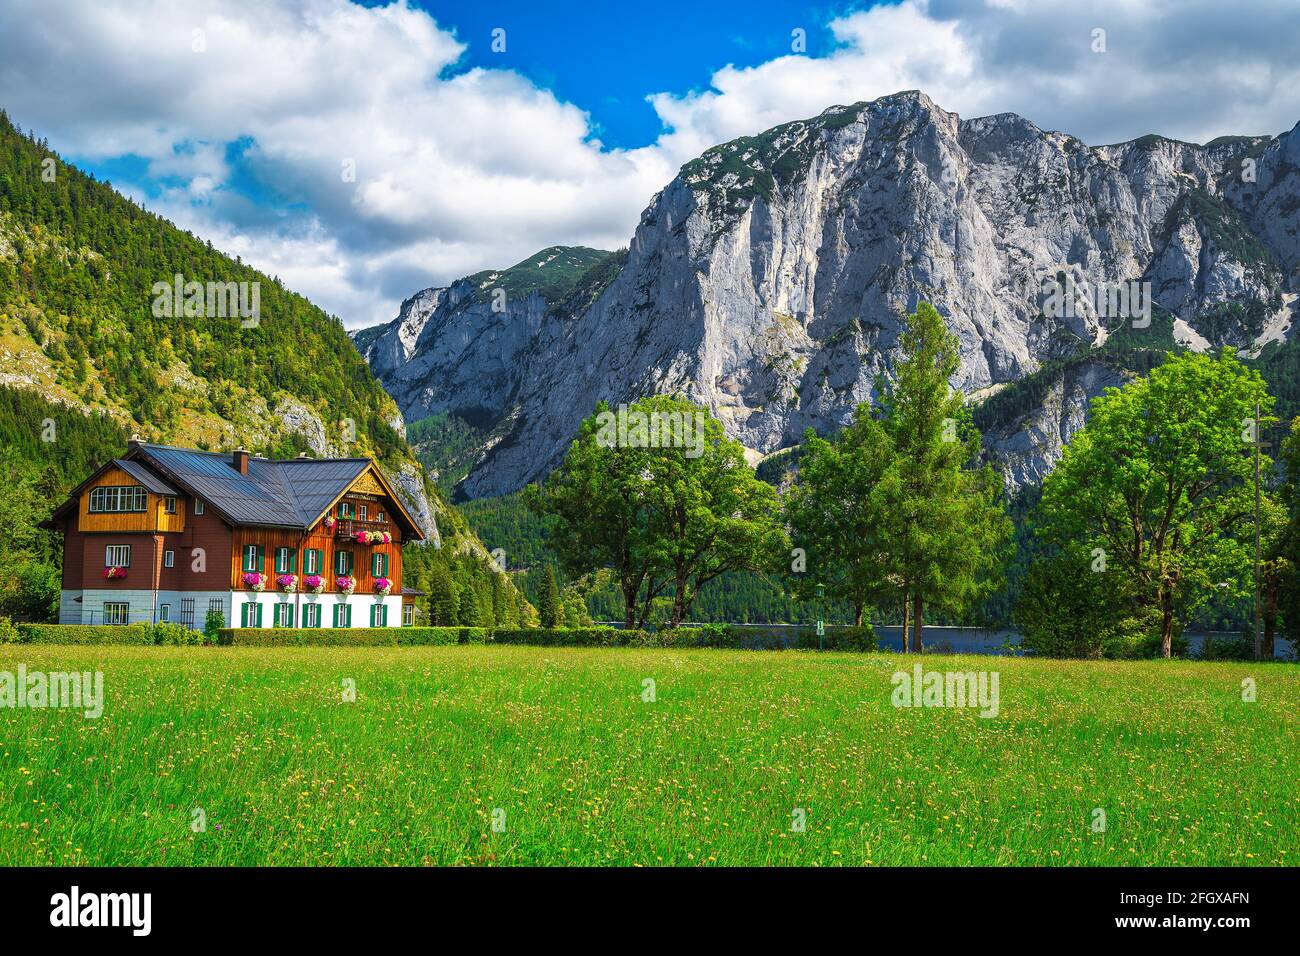 Jolie maison en bois alpin avec des champs verts et de hautes falaises en arrière-plan, lac Altaussee, Autriche, Europe Banque D'Images